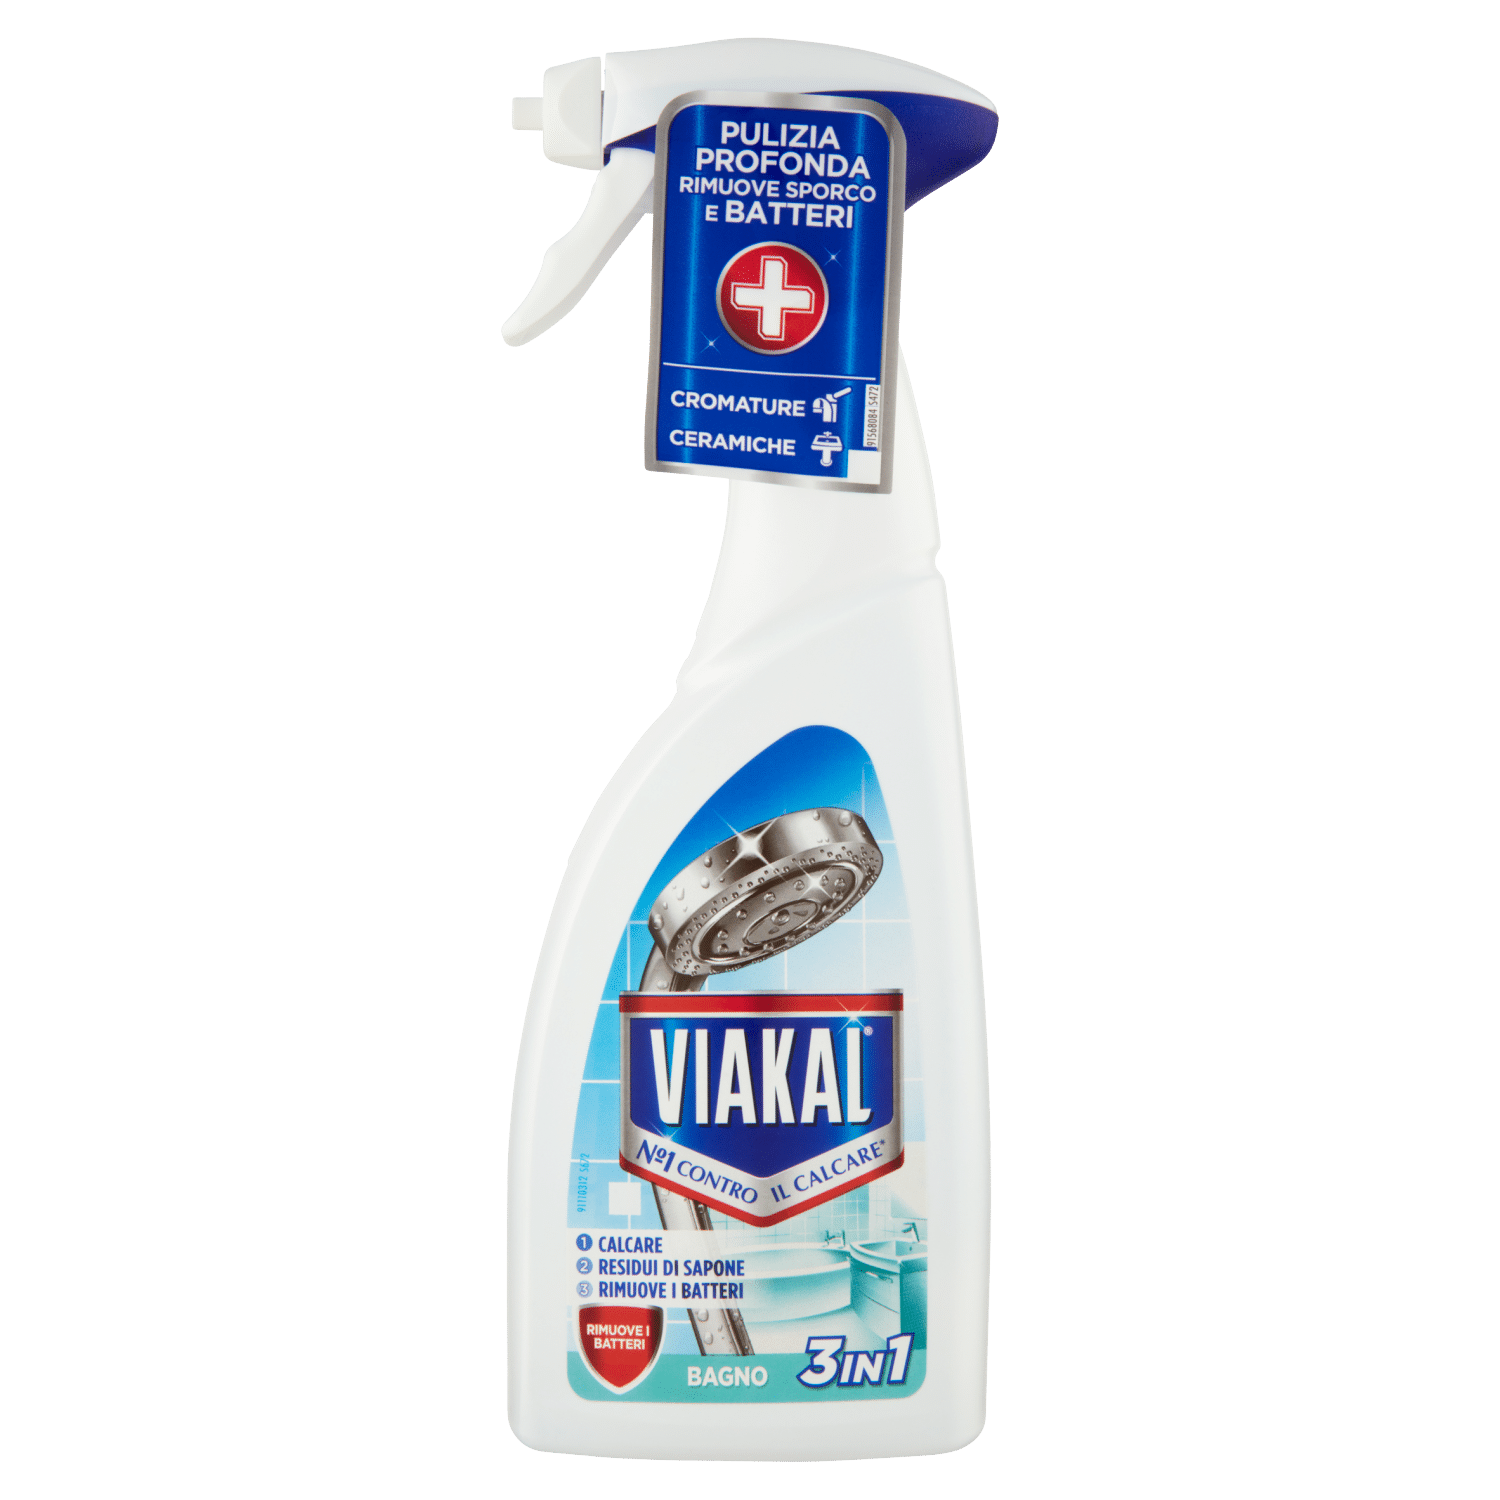 Dash Liquid Detergent Extra-Sanitizing Action 1050 ml